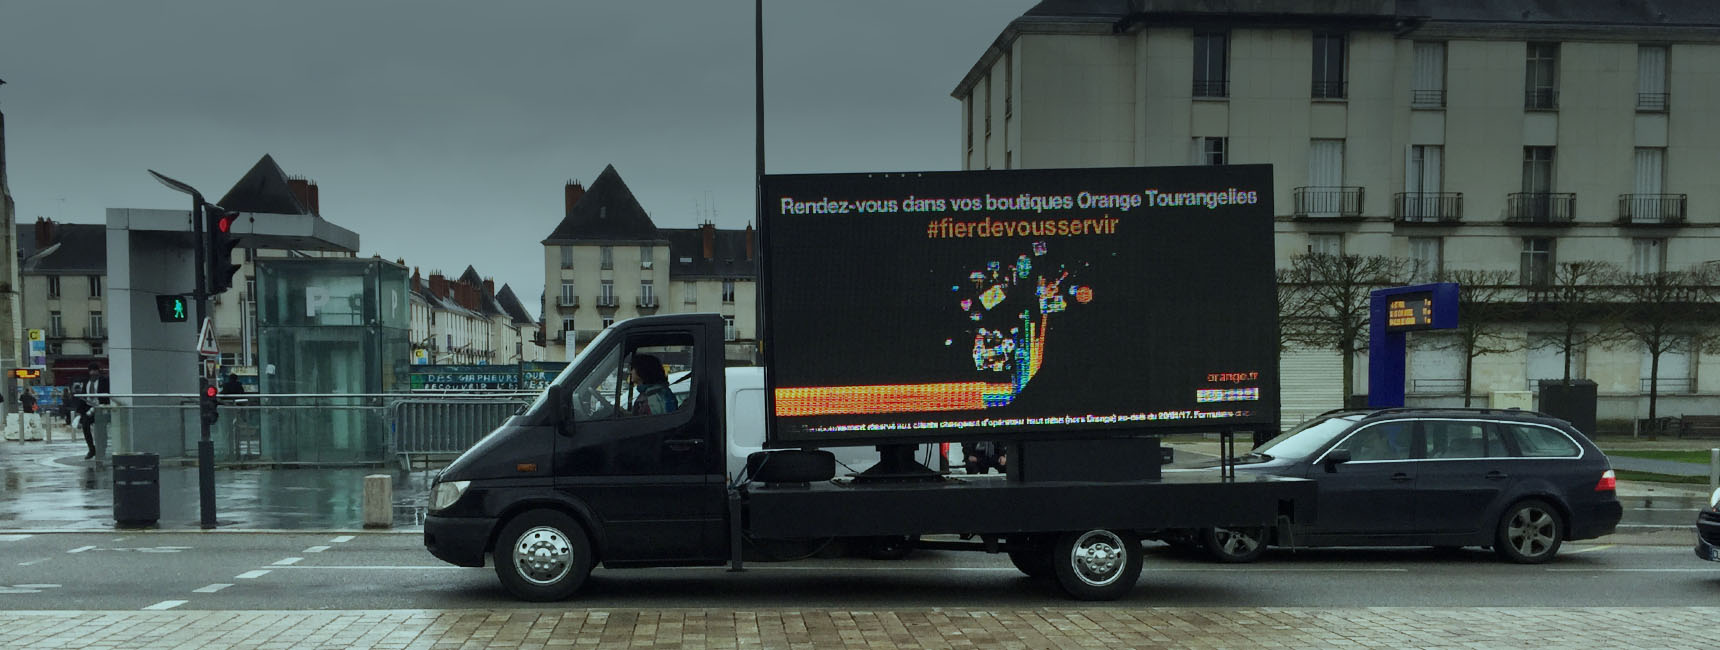 Dispositifs d'affichage mobile - Keemia Tours Agence marketing local en région Centre Normandie